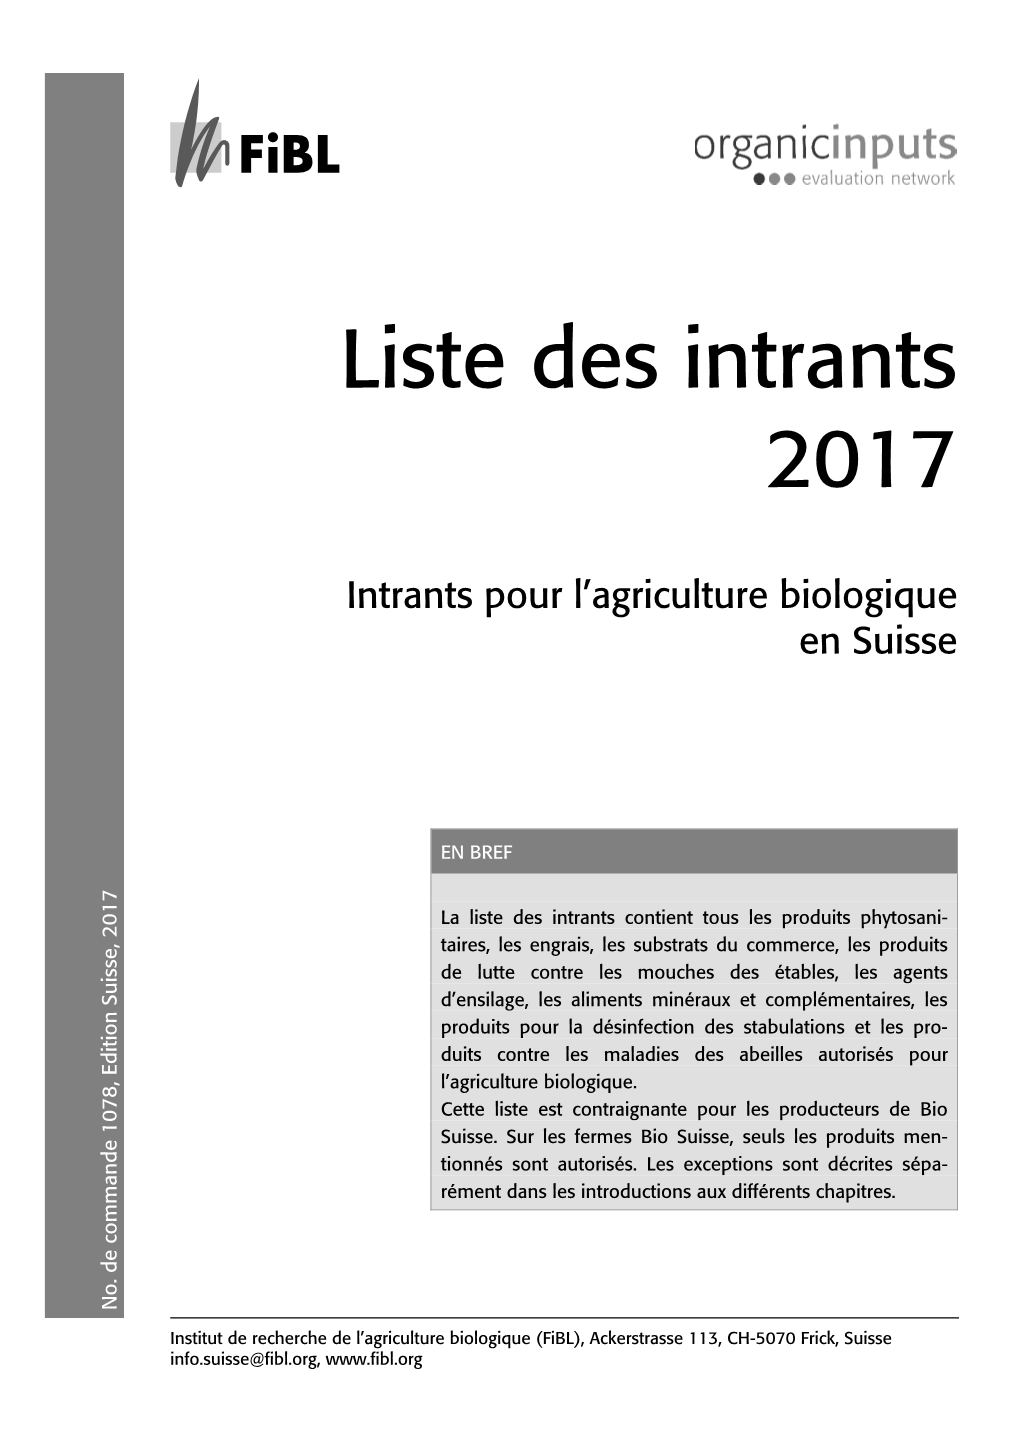 Liste Des Intrants Du Fibl Pour L'agriculture Biologique En Suisse